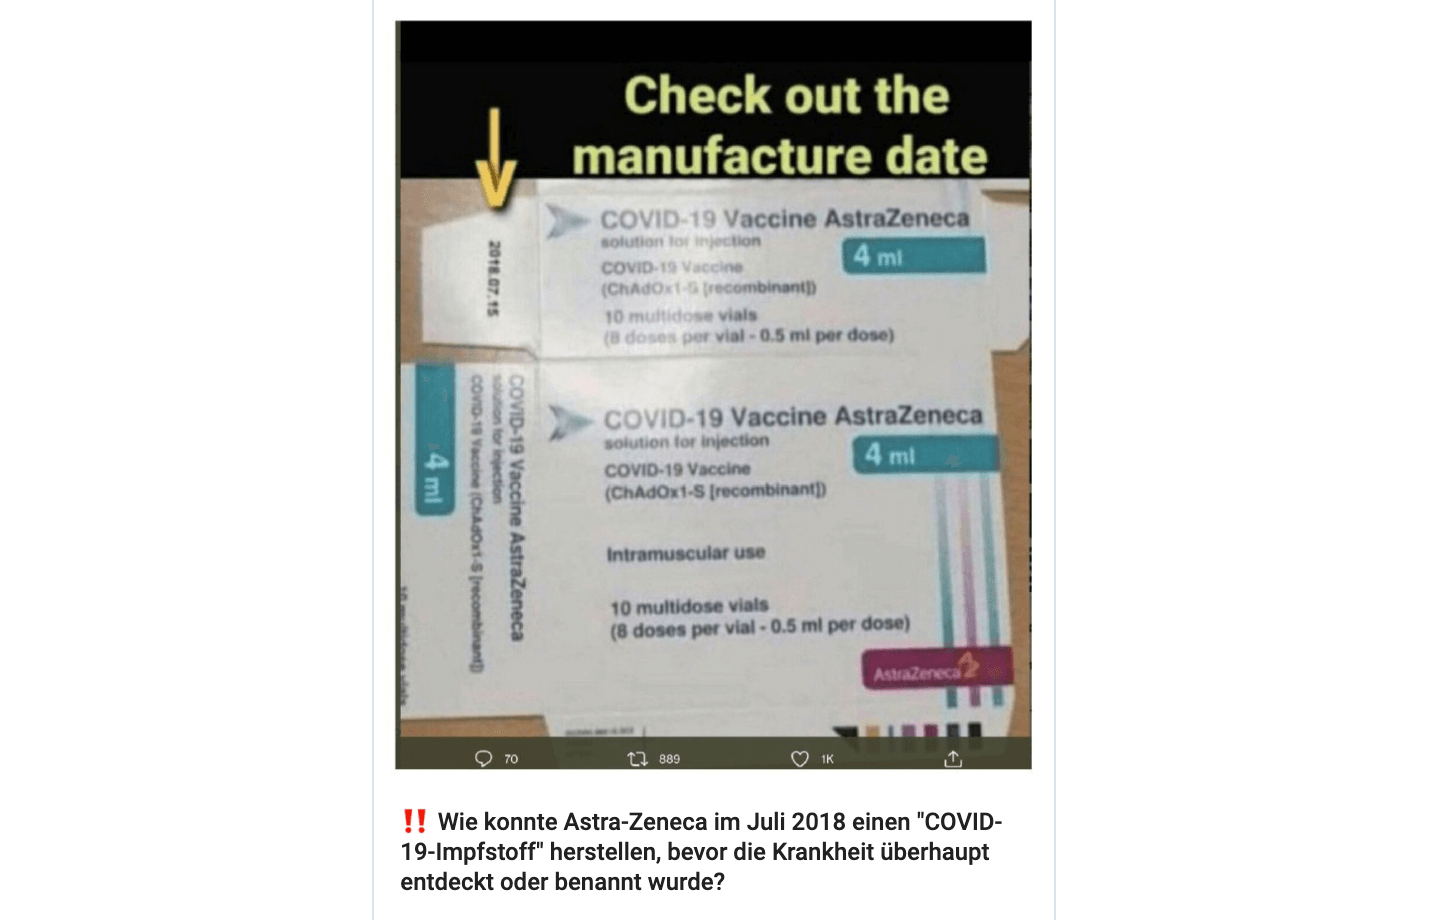 Dieses Foto einer Astrazeneca-Verpackung soll beweisen, dass der Covid-19-Impfstoff bereits im Juli 2018 hergestellt wurde. Doch das Foto ist manipuliert. (Quelle: Telegram / Screenshot: CORRECTIV.Faktencheck)